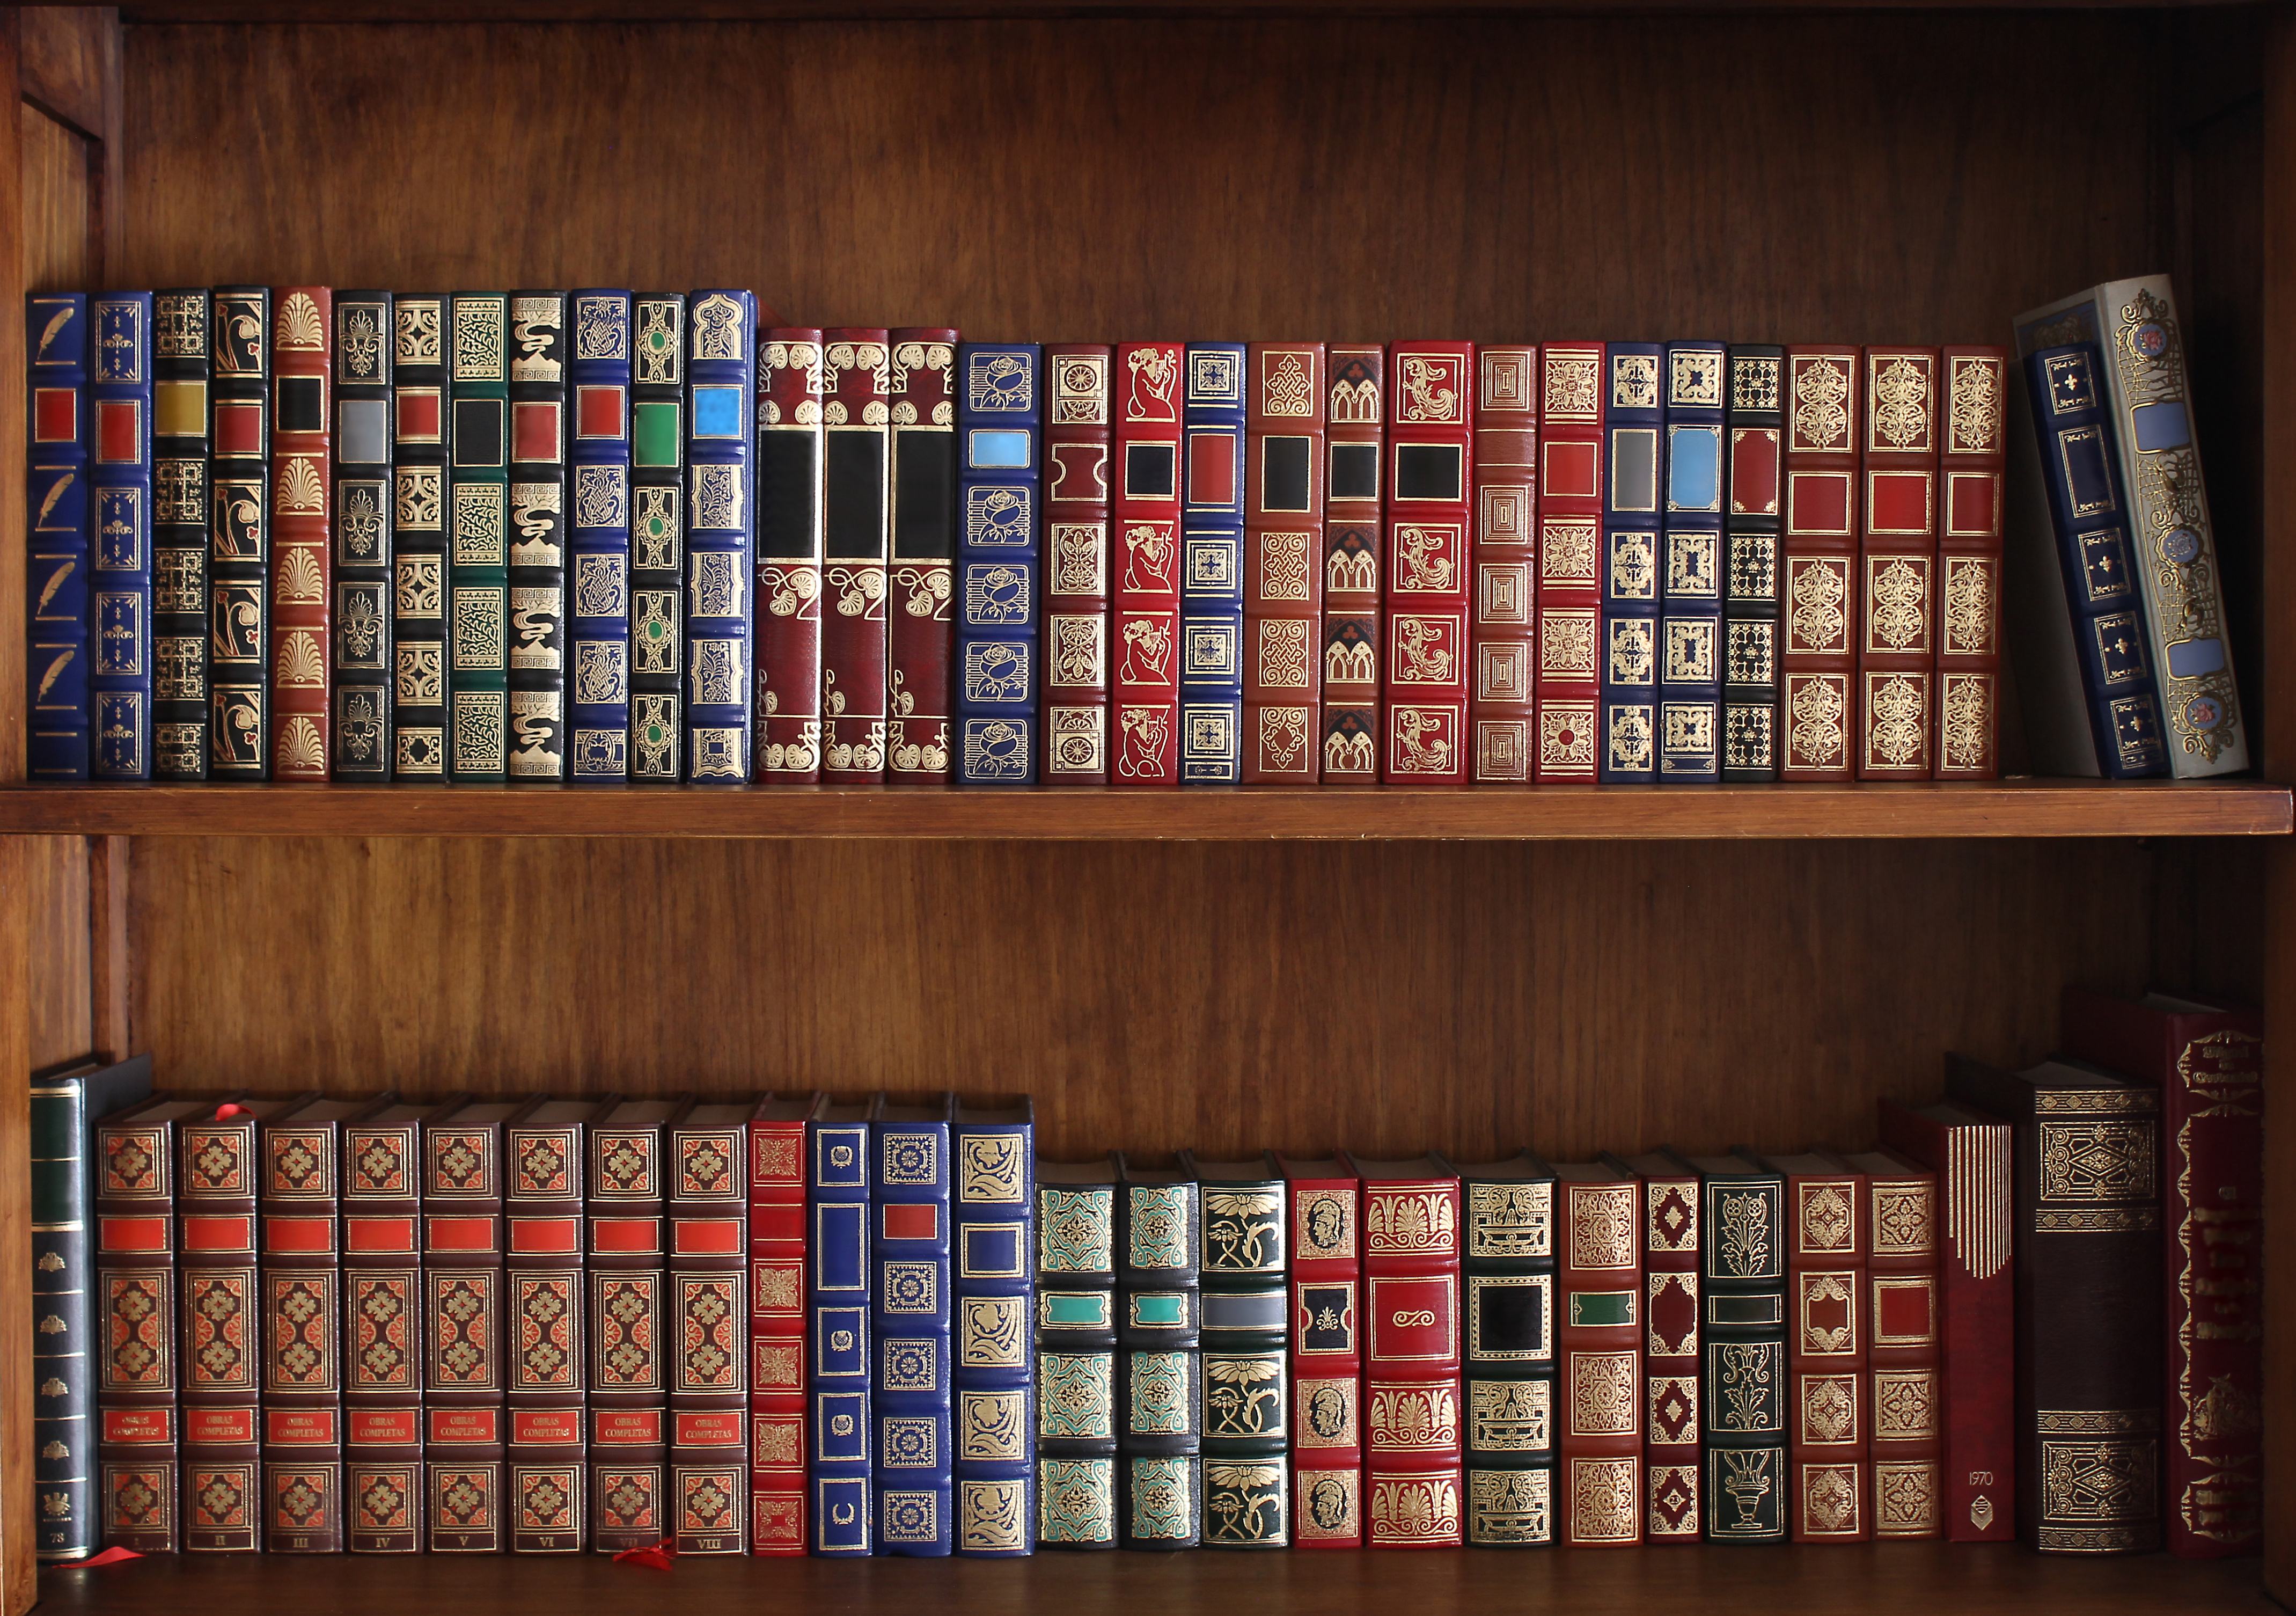 Library shelves full of old books | Source: Shutterstock